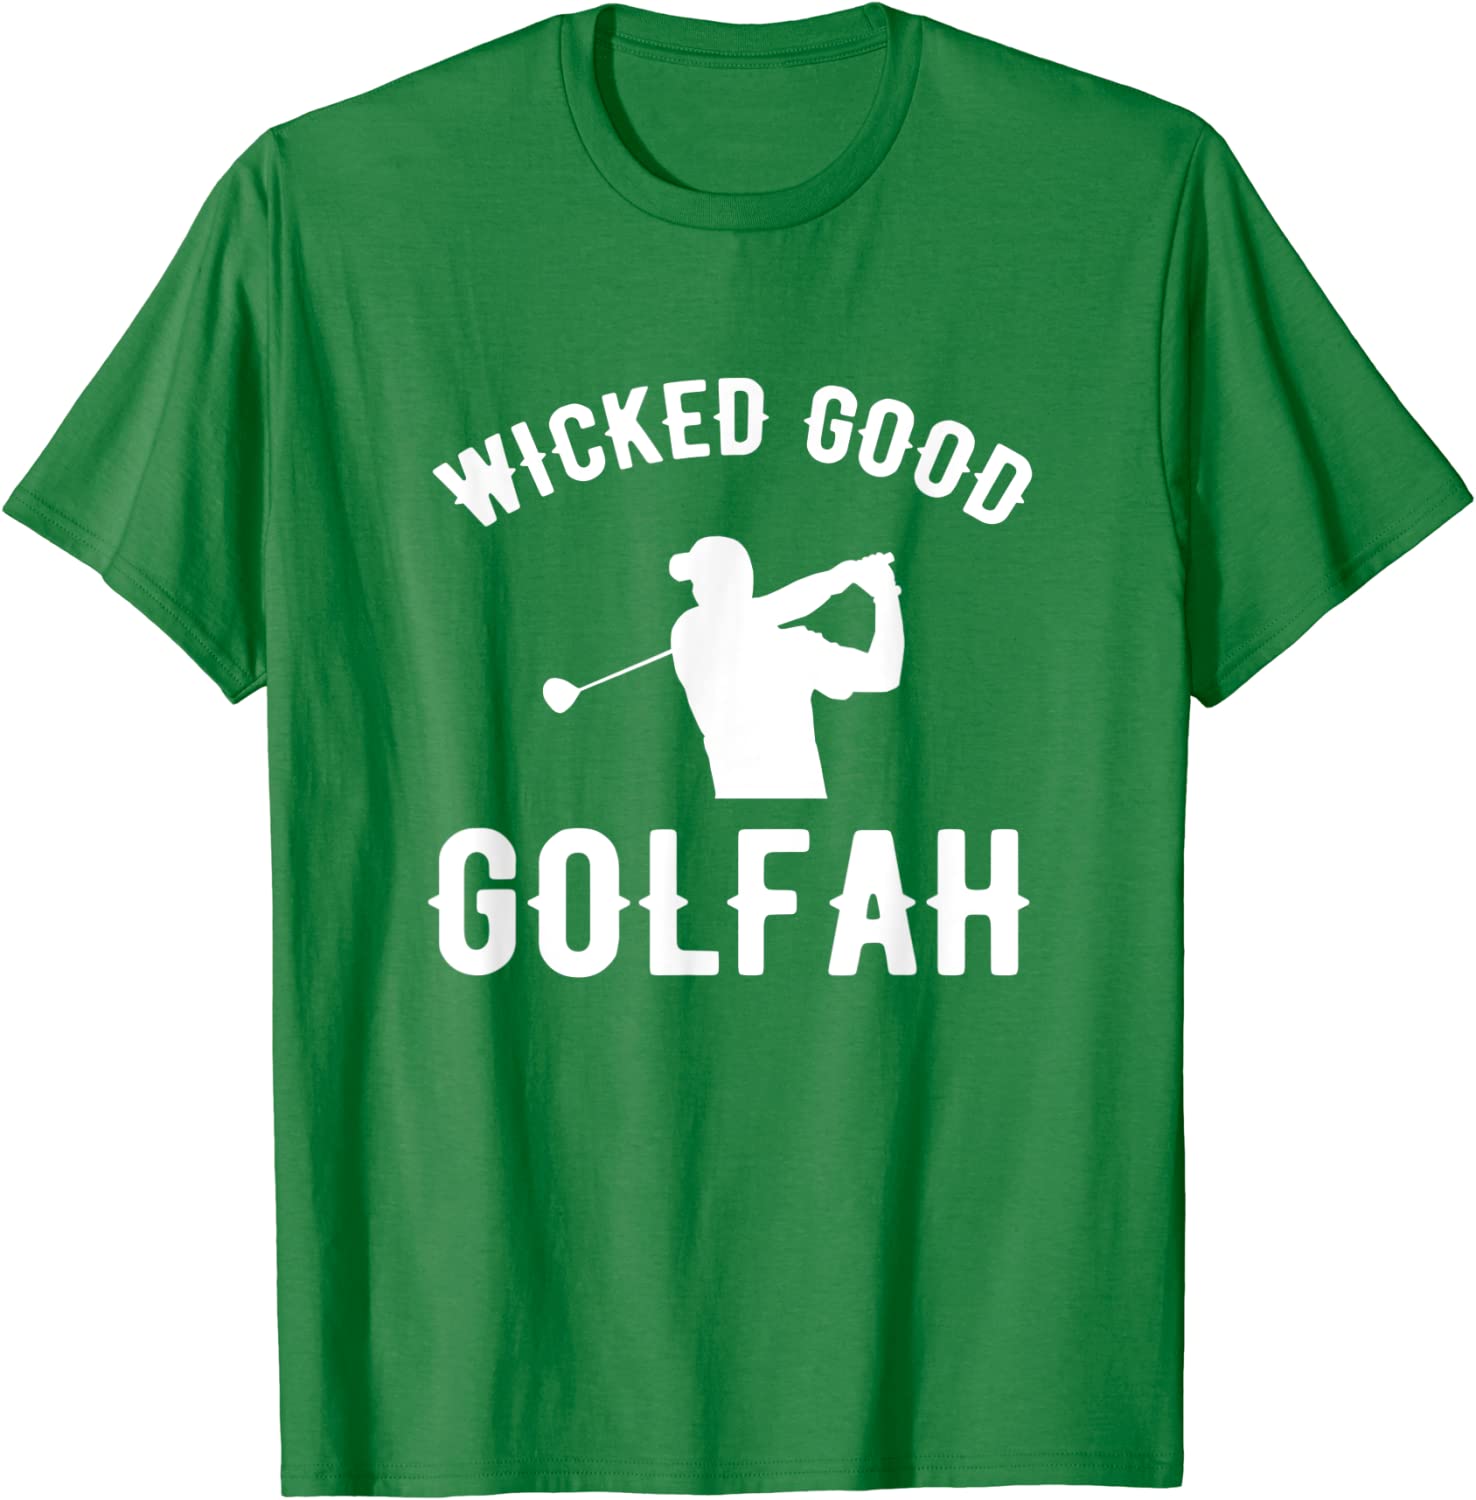 wicked good golfah t-shirt